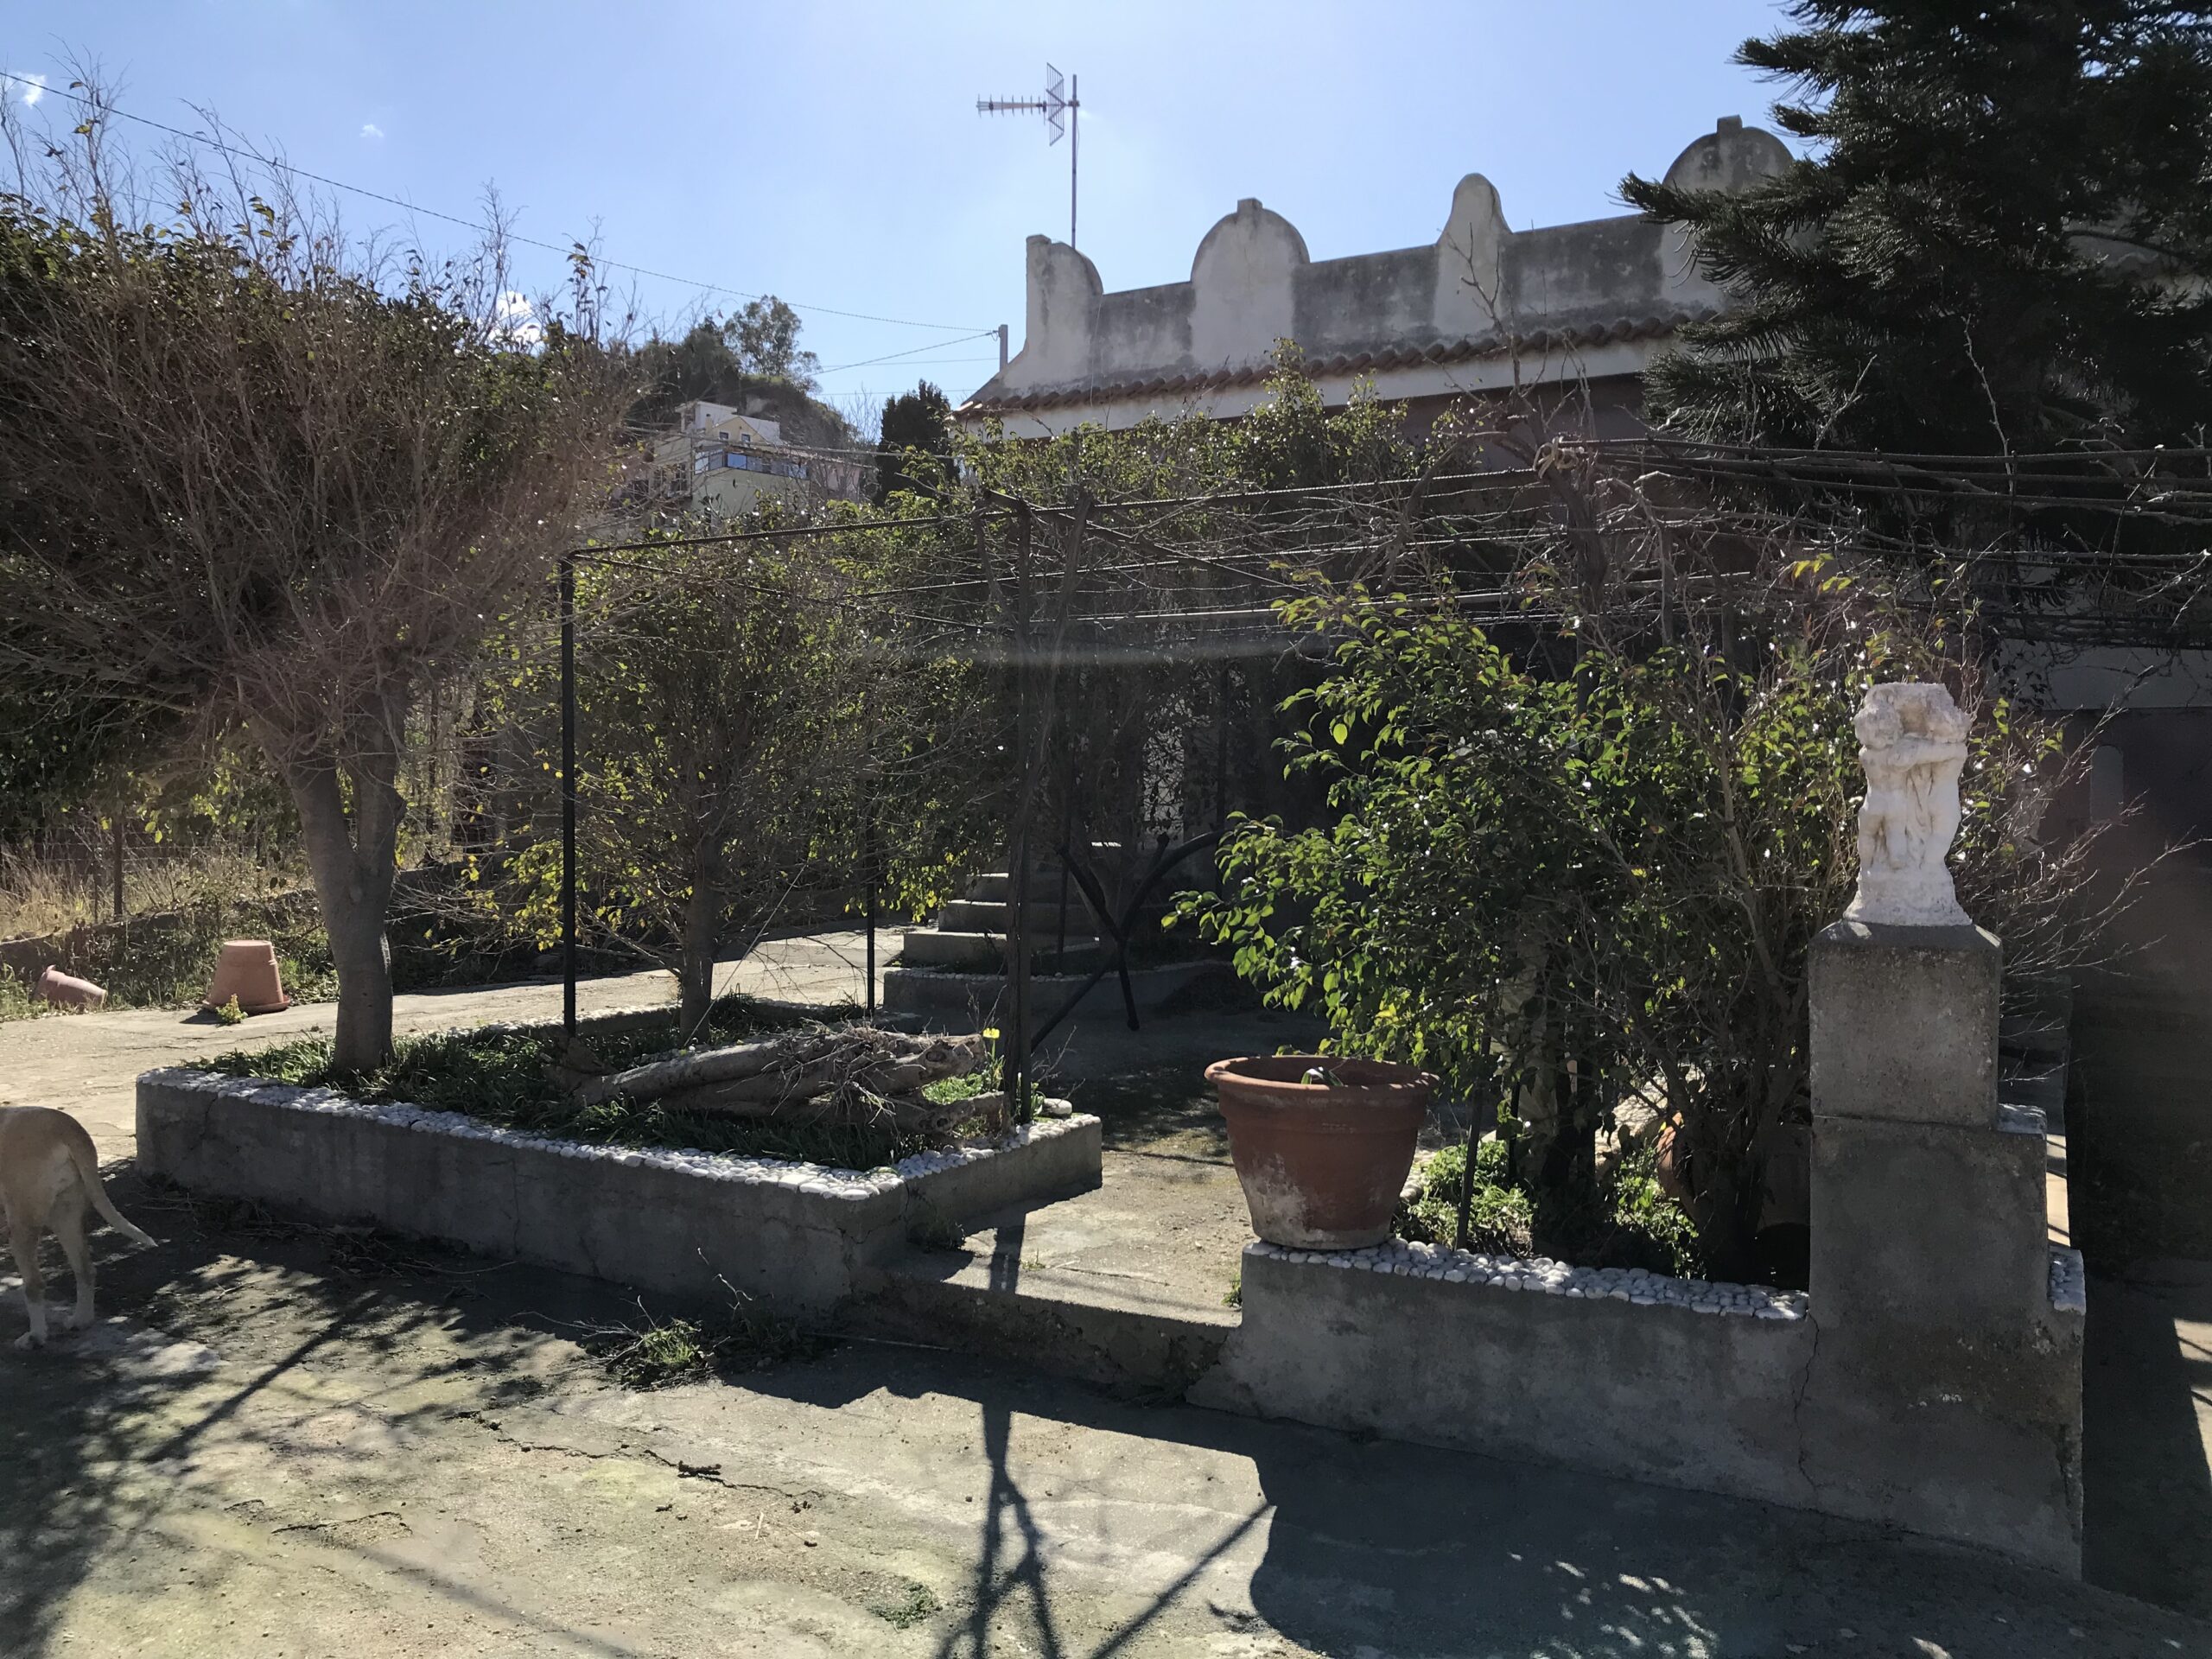 Acqualadroni panoramica villa con giardino